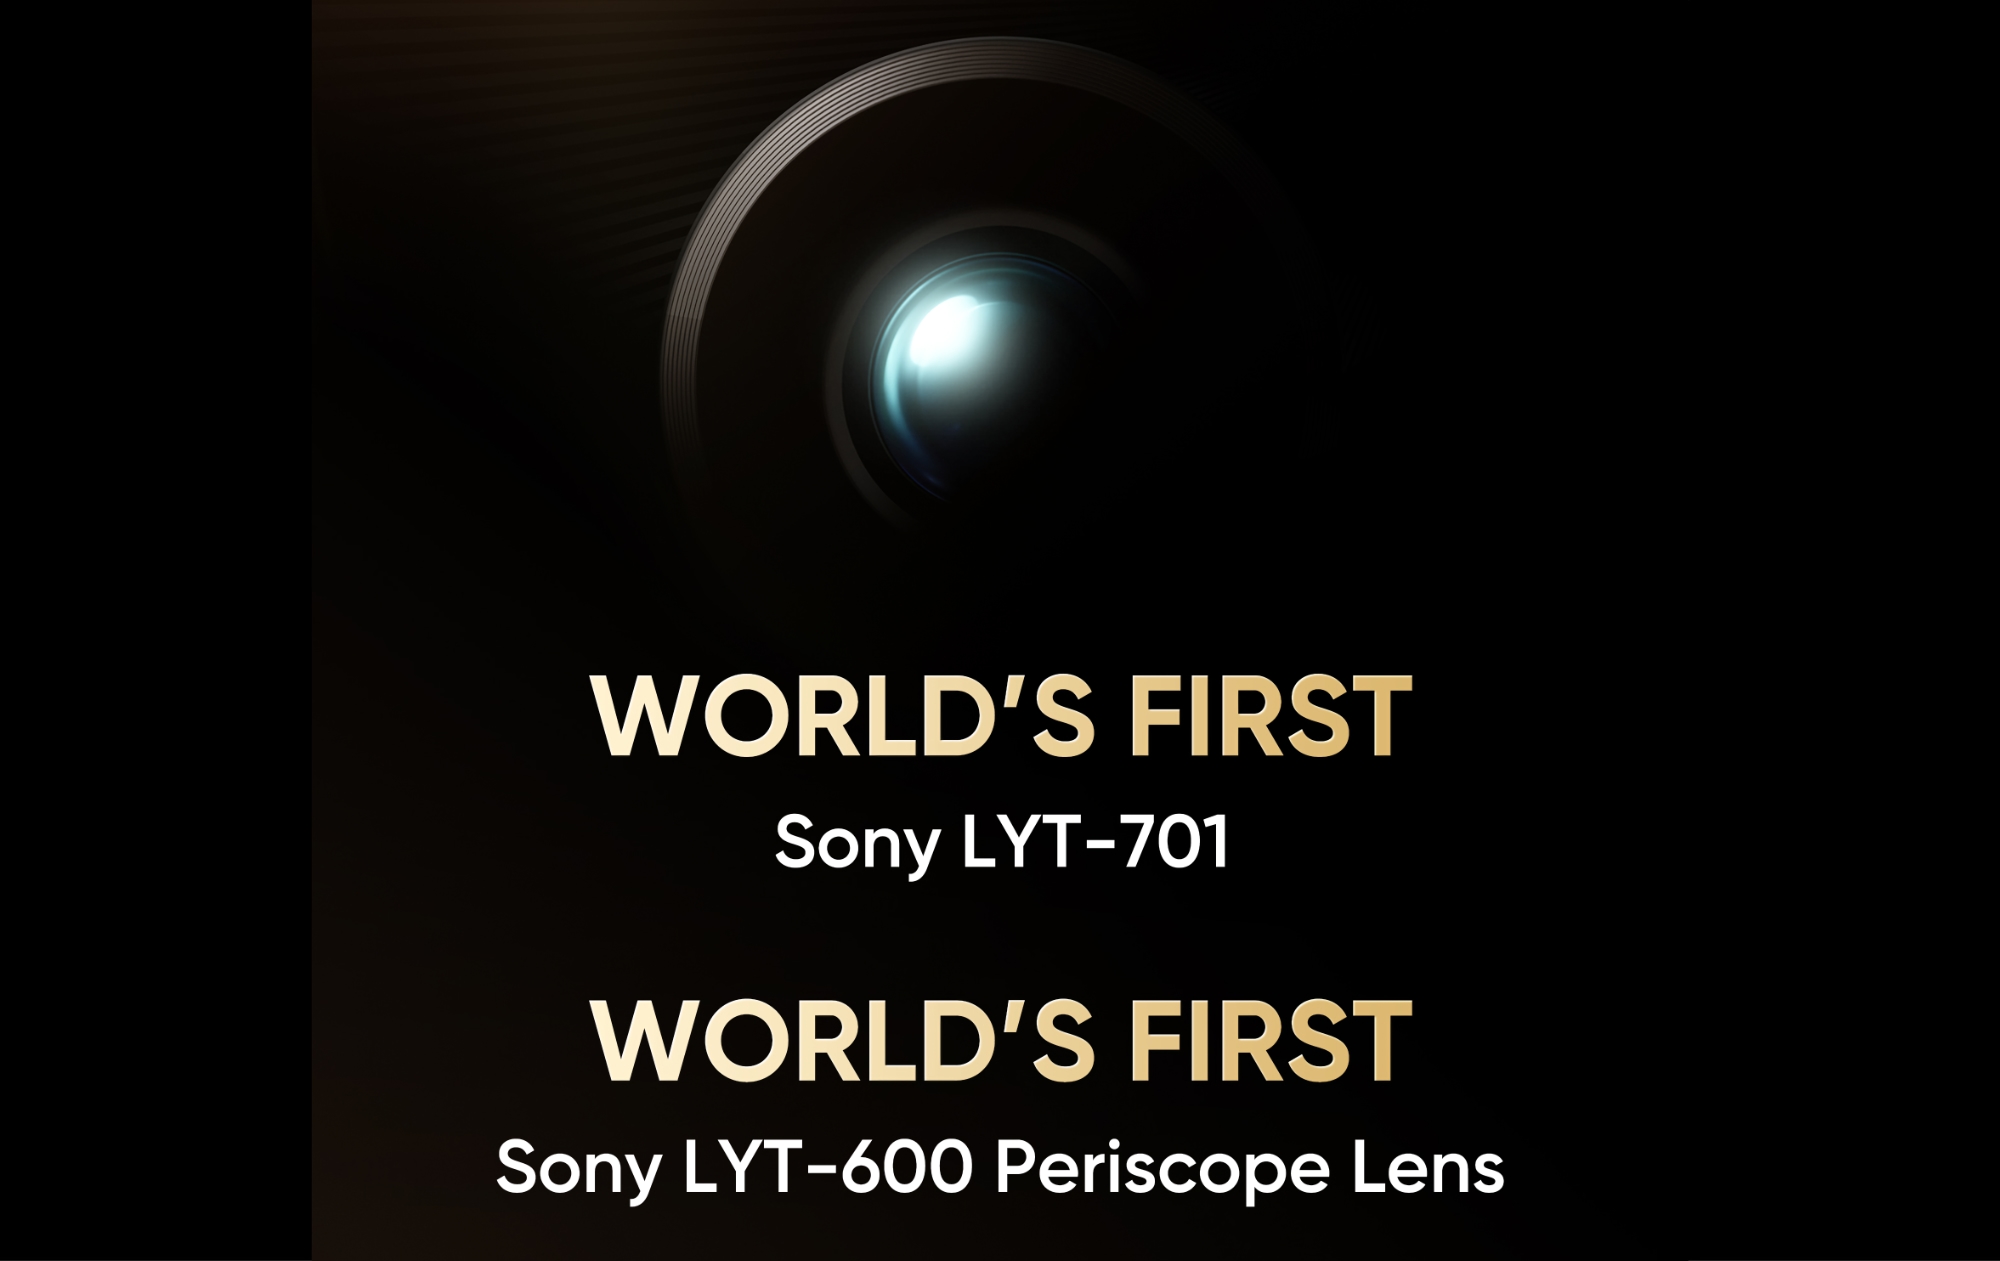 To już oficjalne: realme 13 Pro+ będzie pierwszym smartfonem na rynku wyposażonym w sensory Sony LYT-701 i Sony LYT-600 